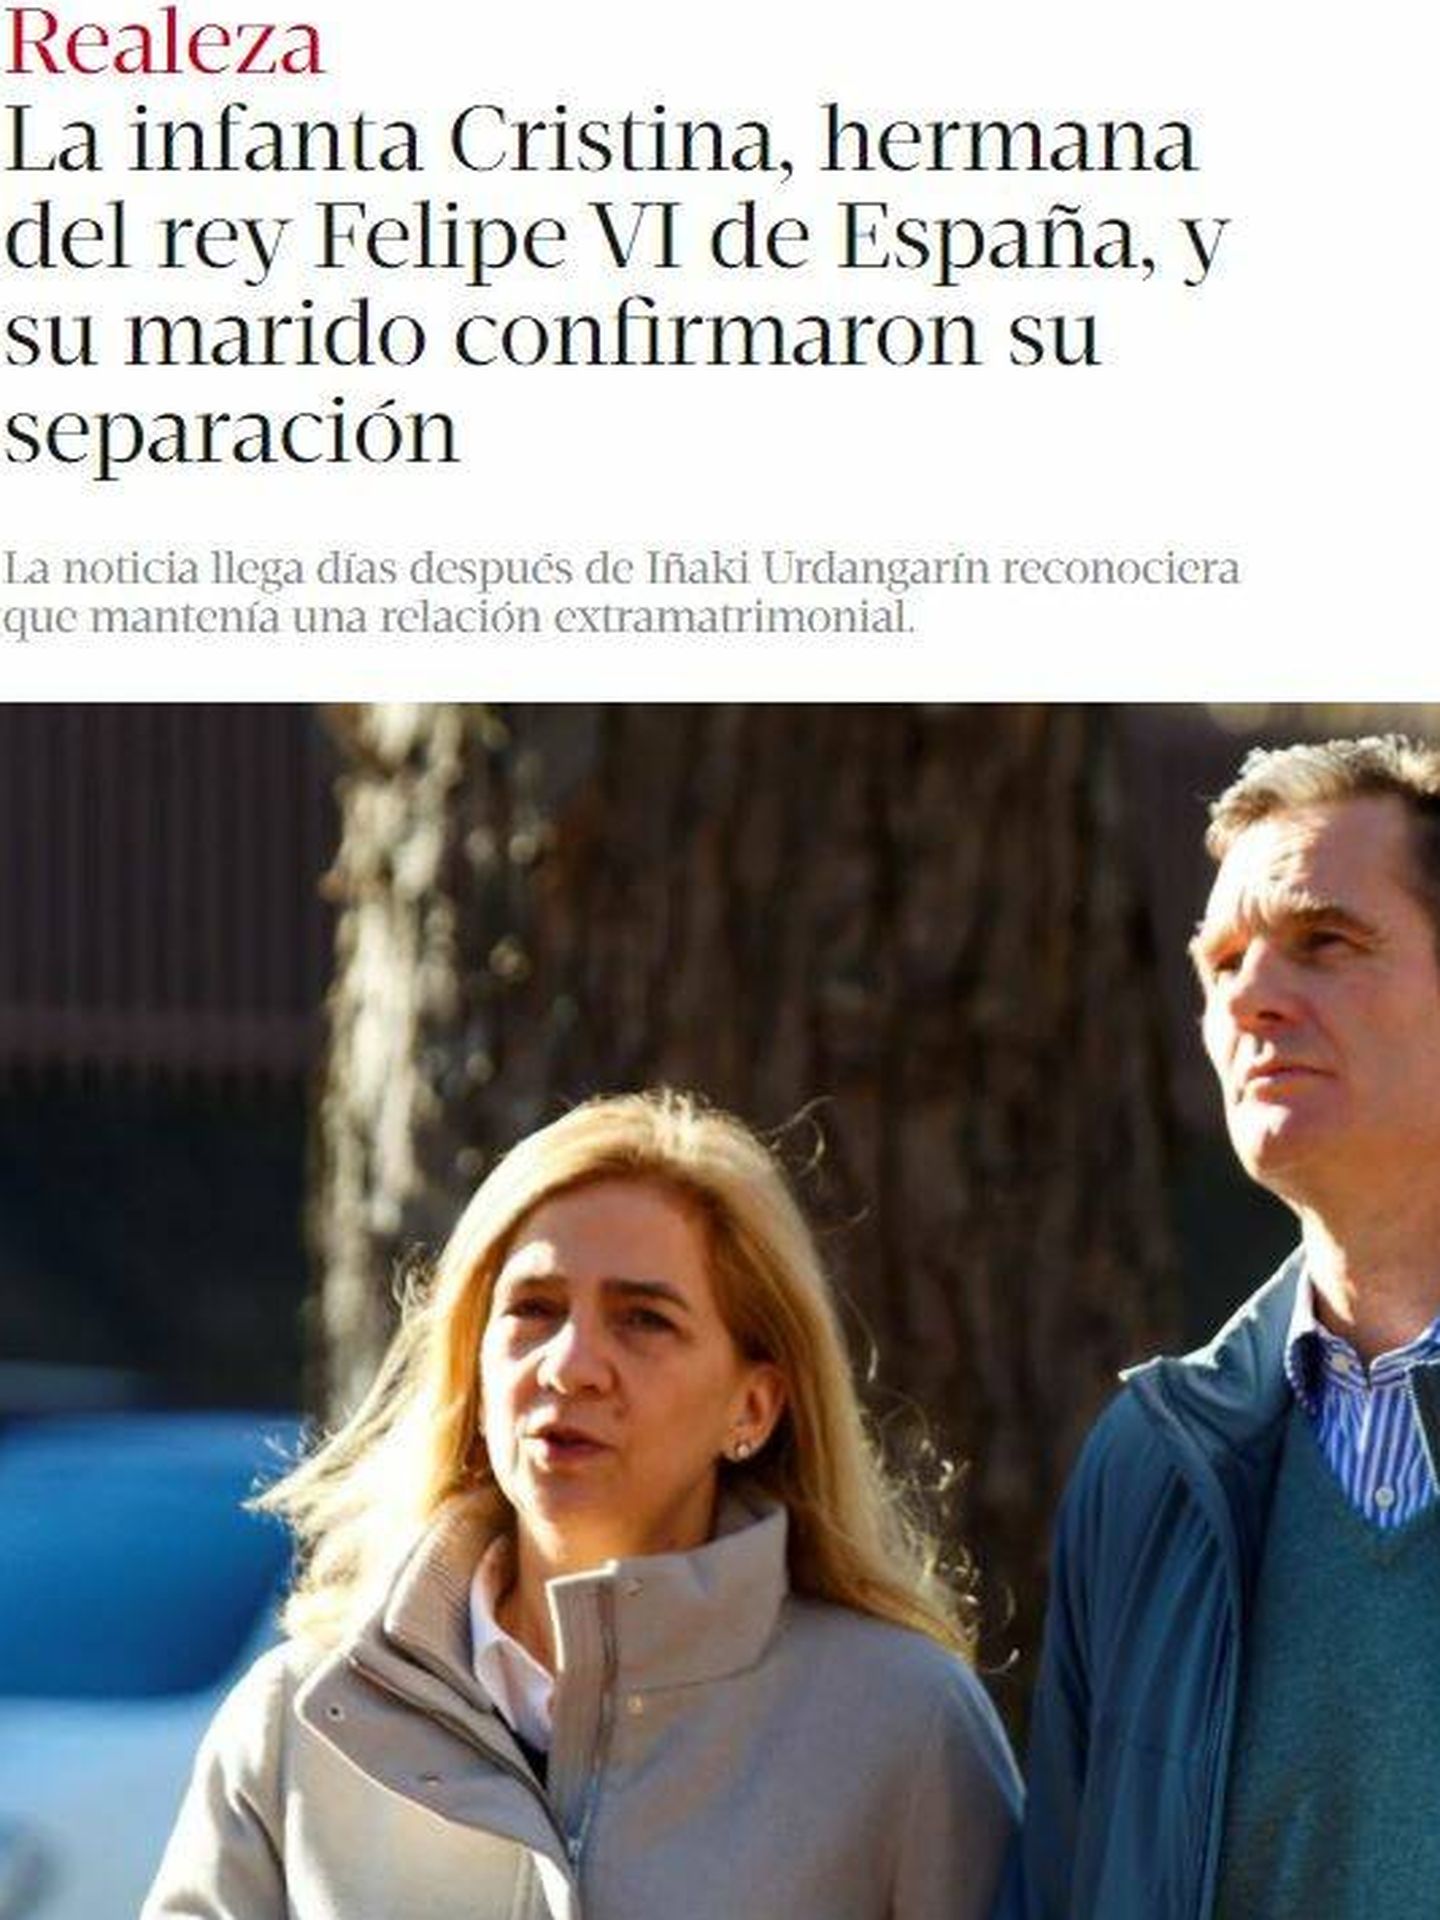 La noticia en el argentino 'Clarín'. 